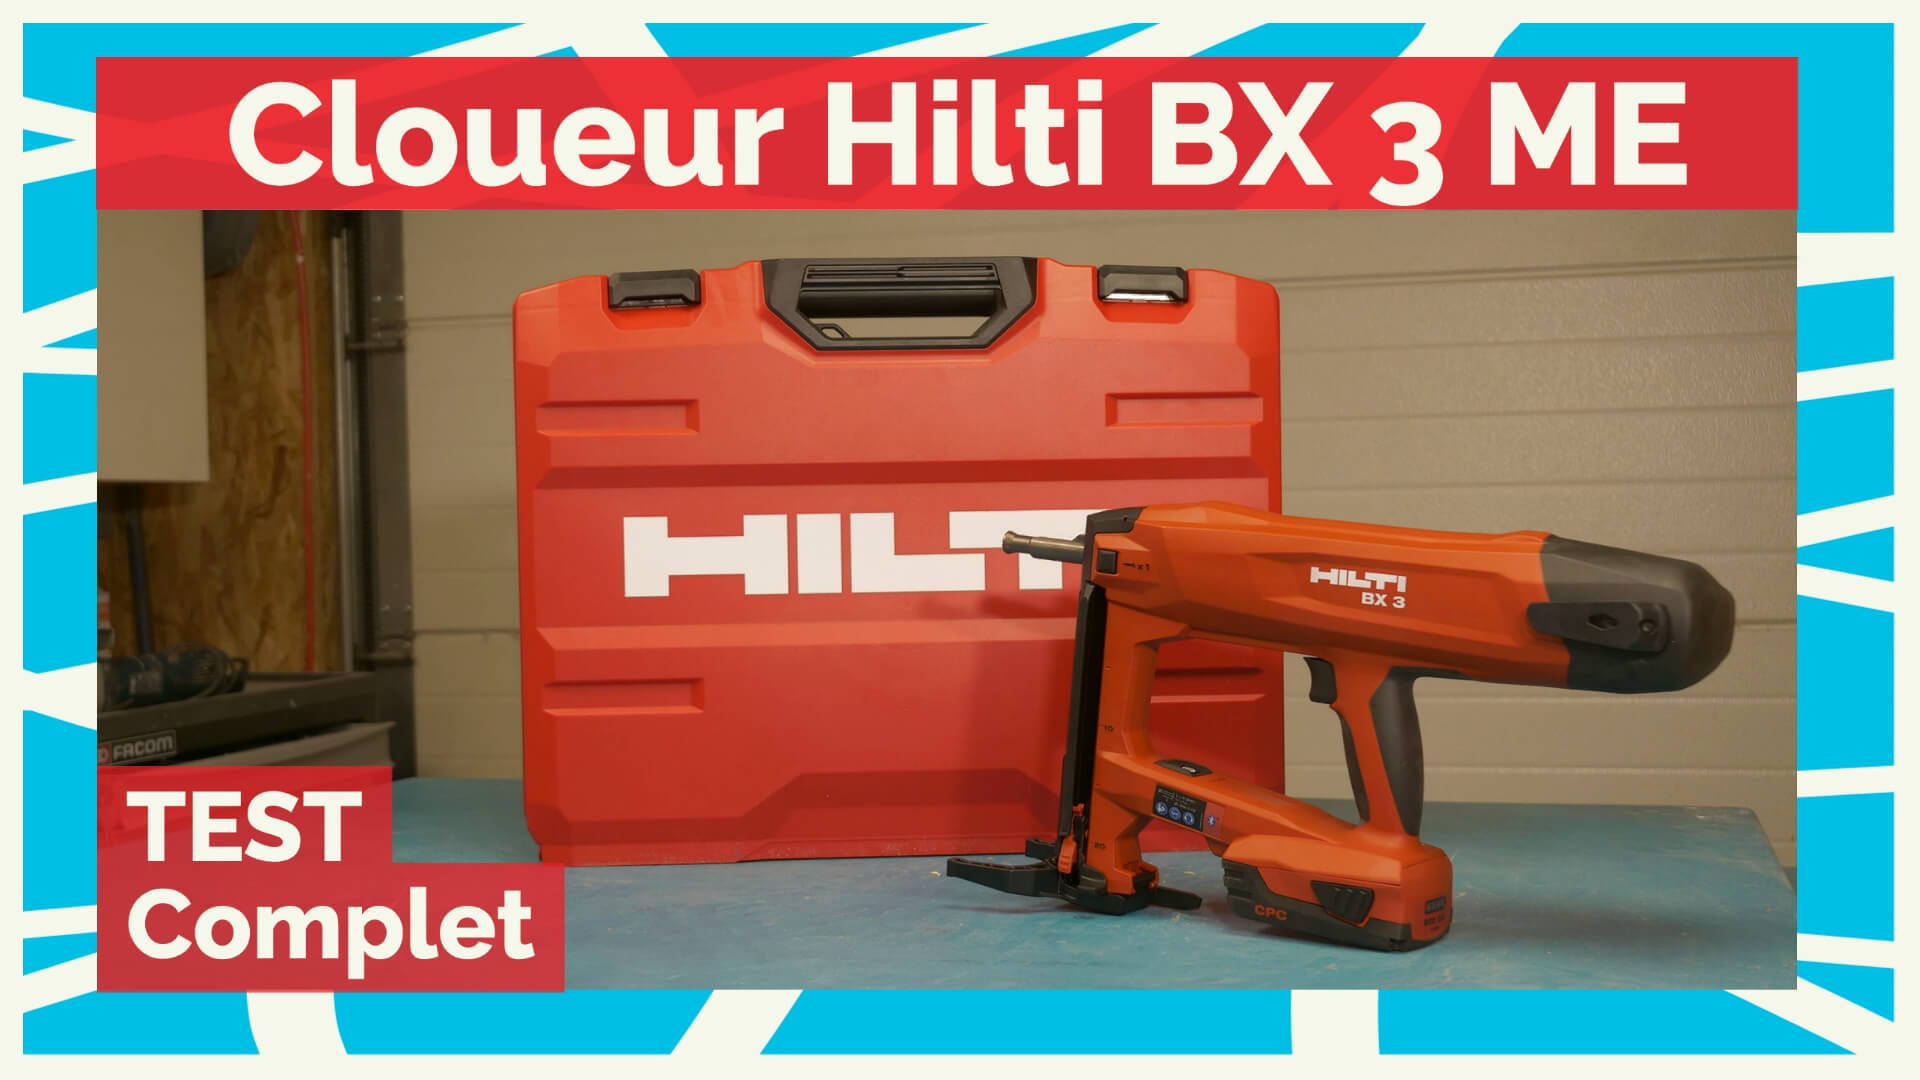 HILTI BX 3 - cloueur béton 